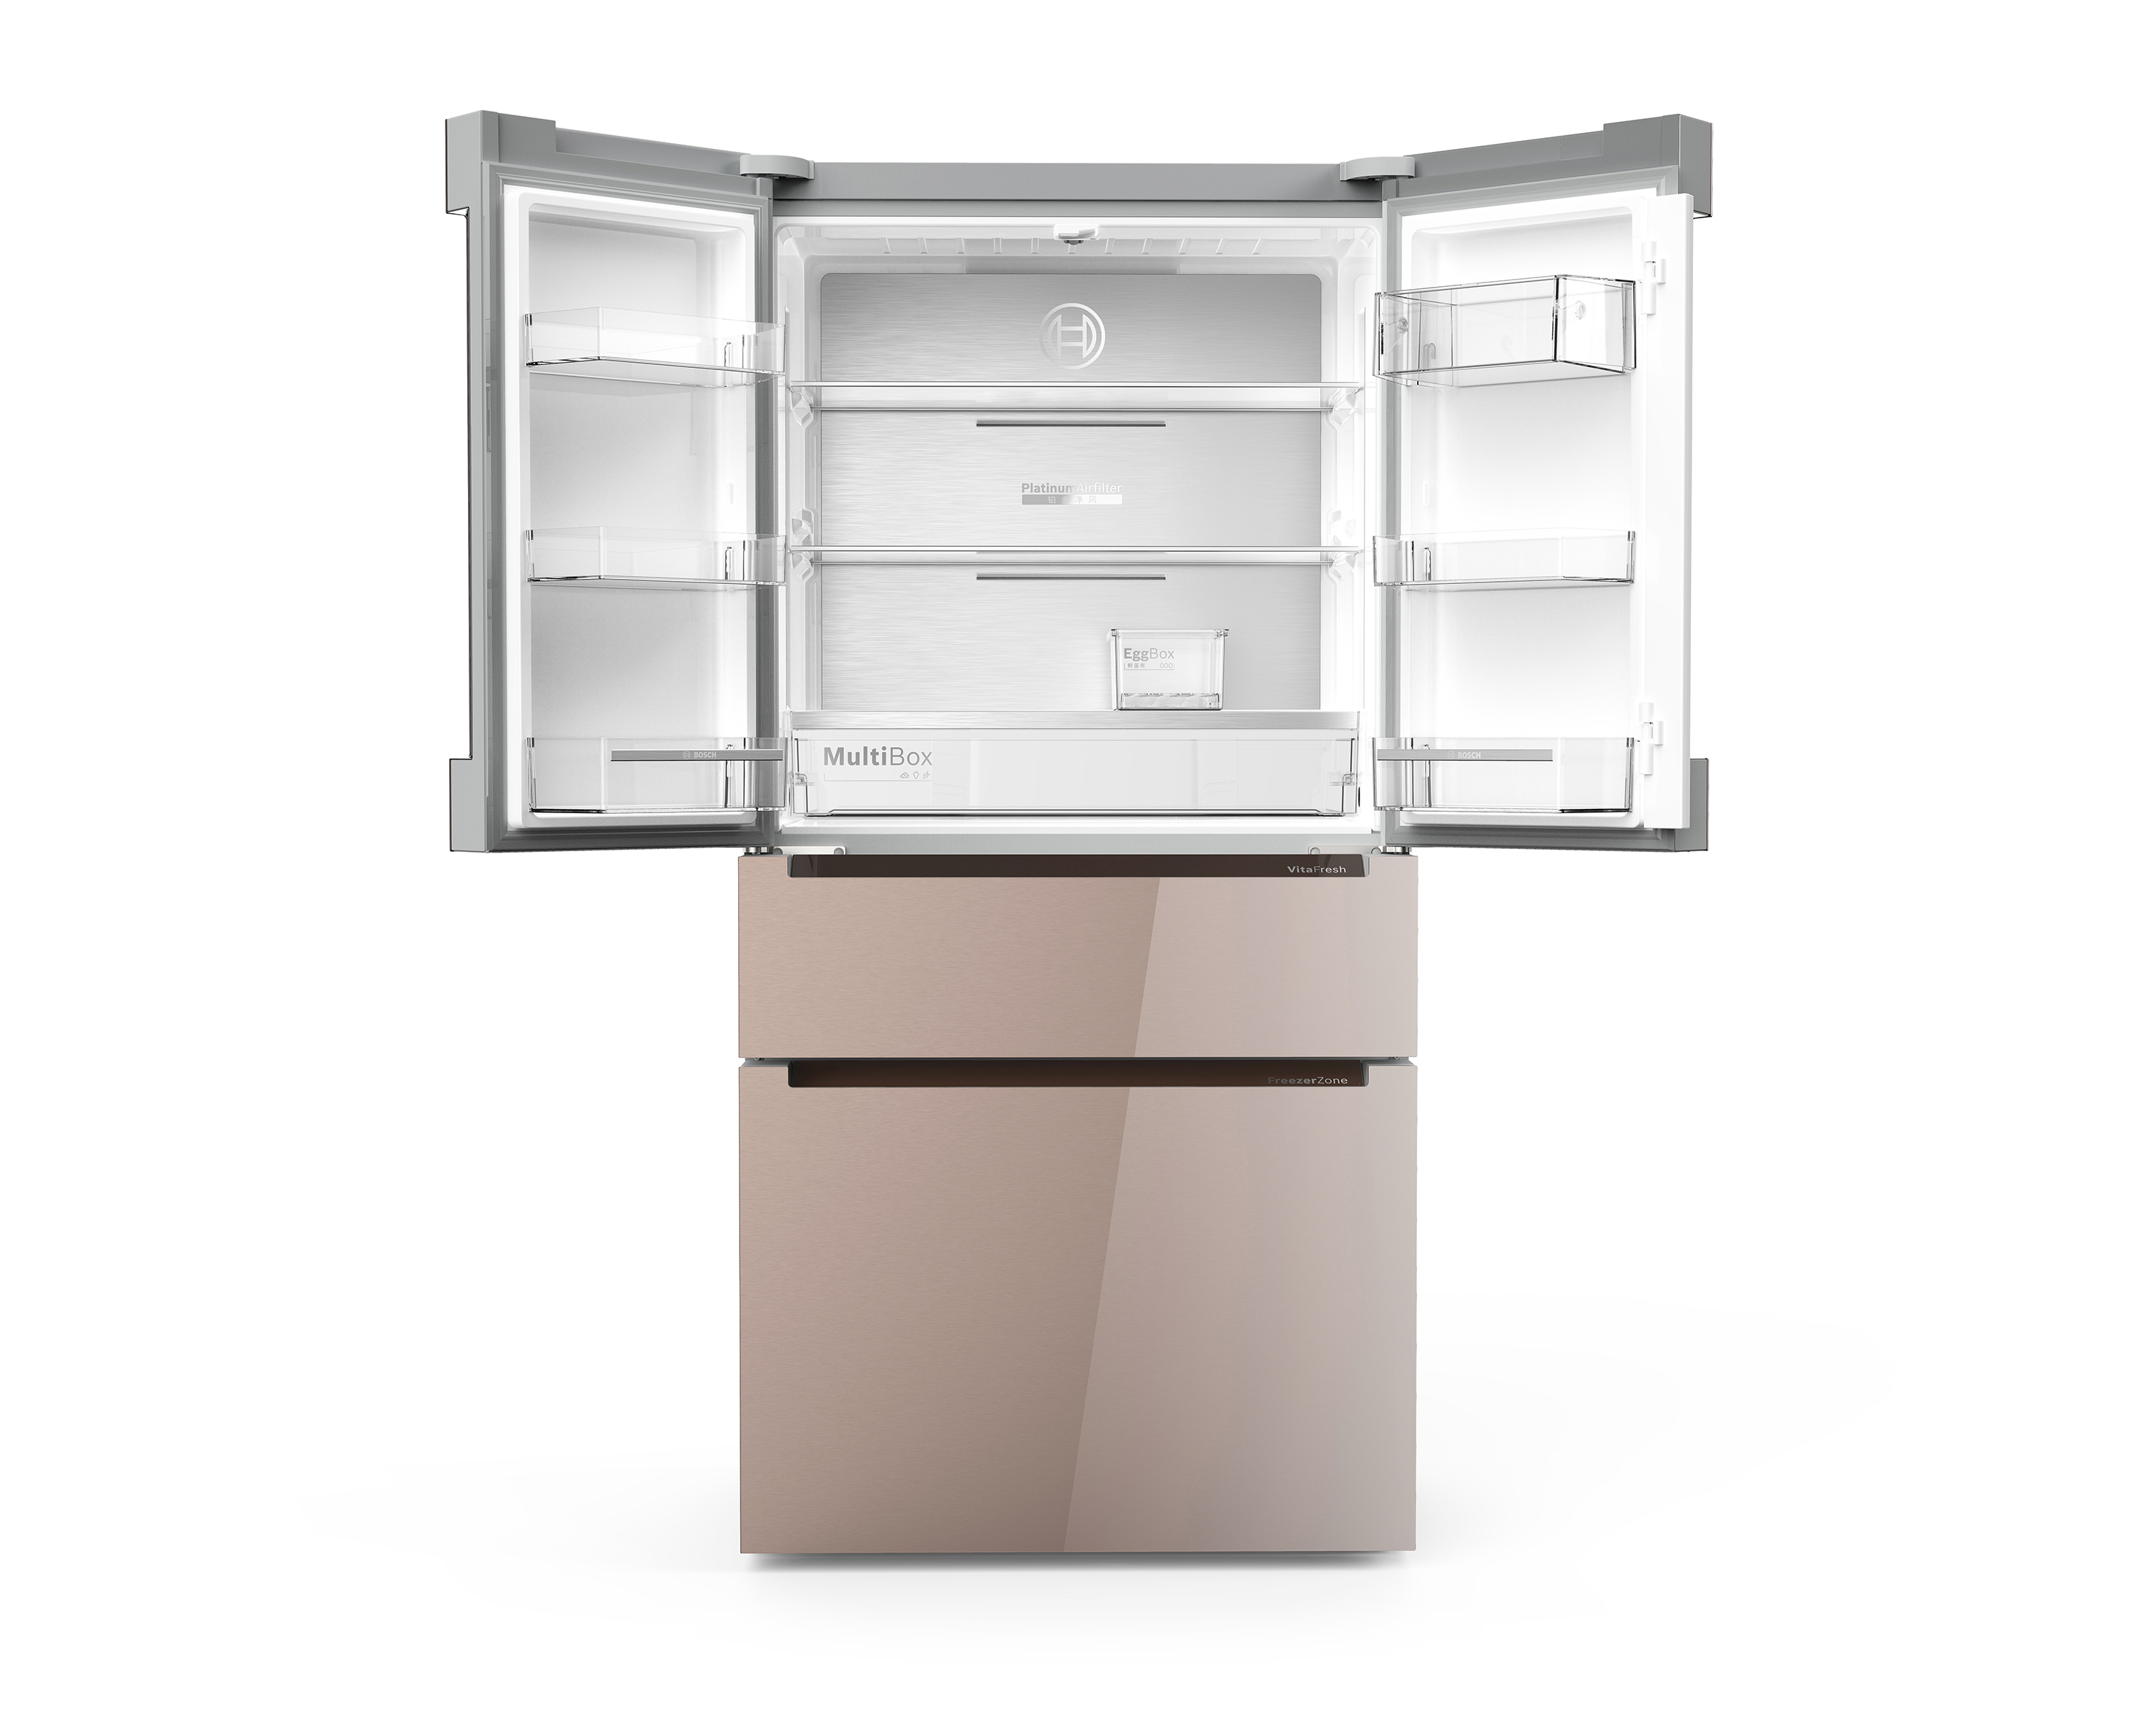 BOSCH VitaFresh multidoor fridge